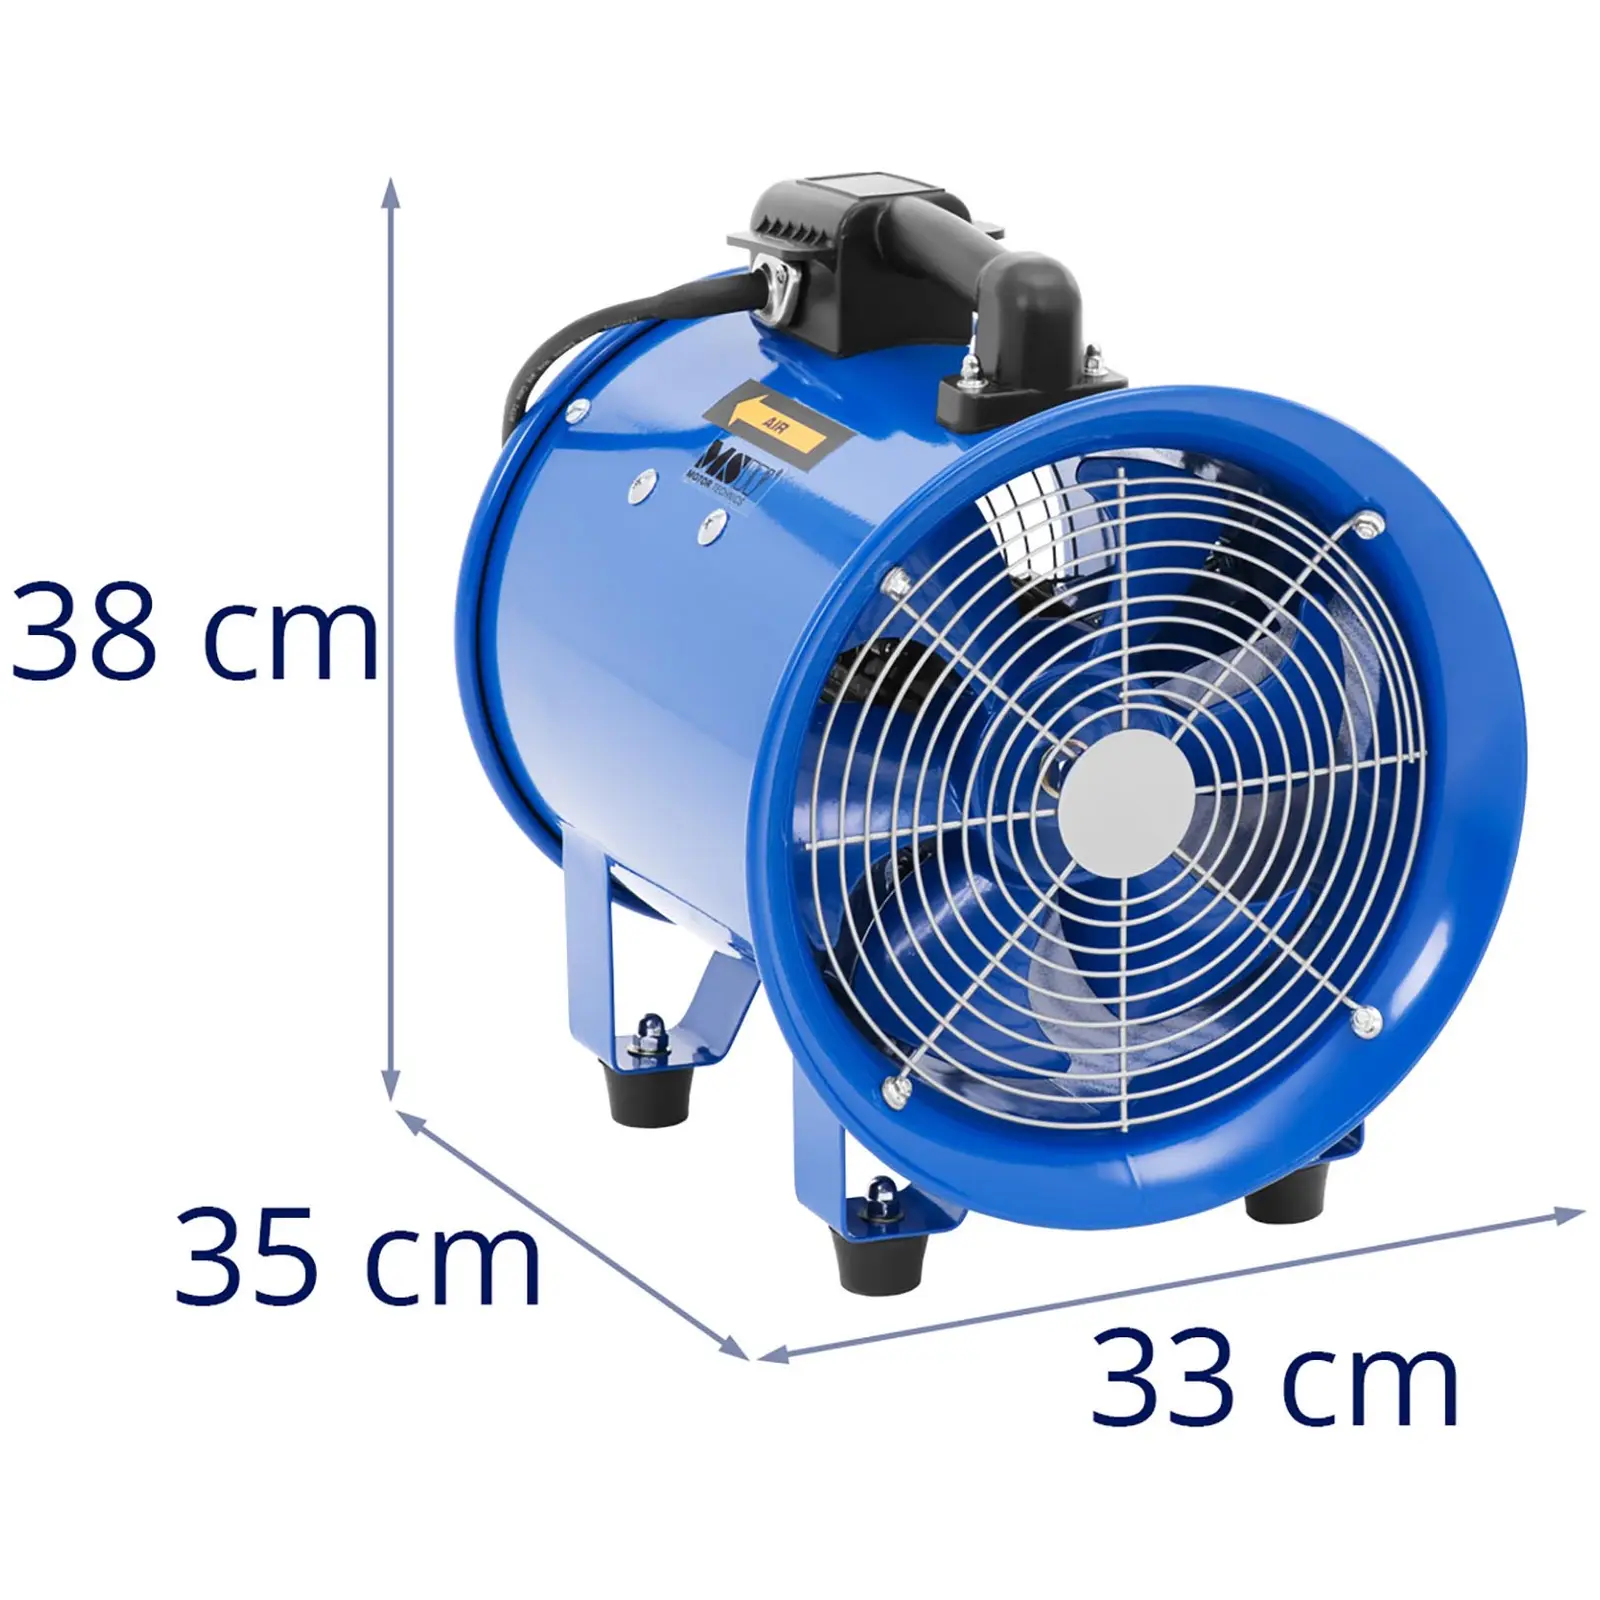 Ipari ventilátor - 2700 m³/h - Ø 280 mm - 10 m tömlő